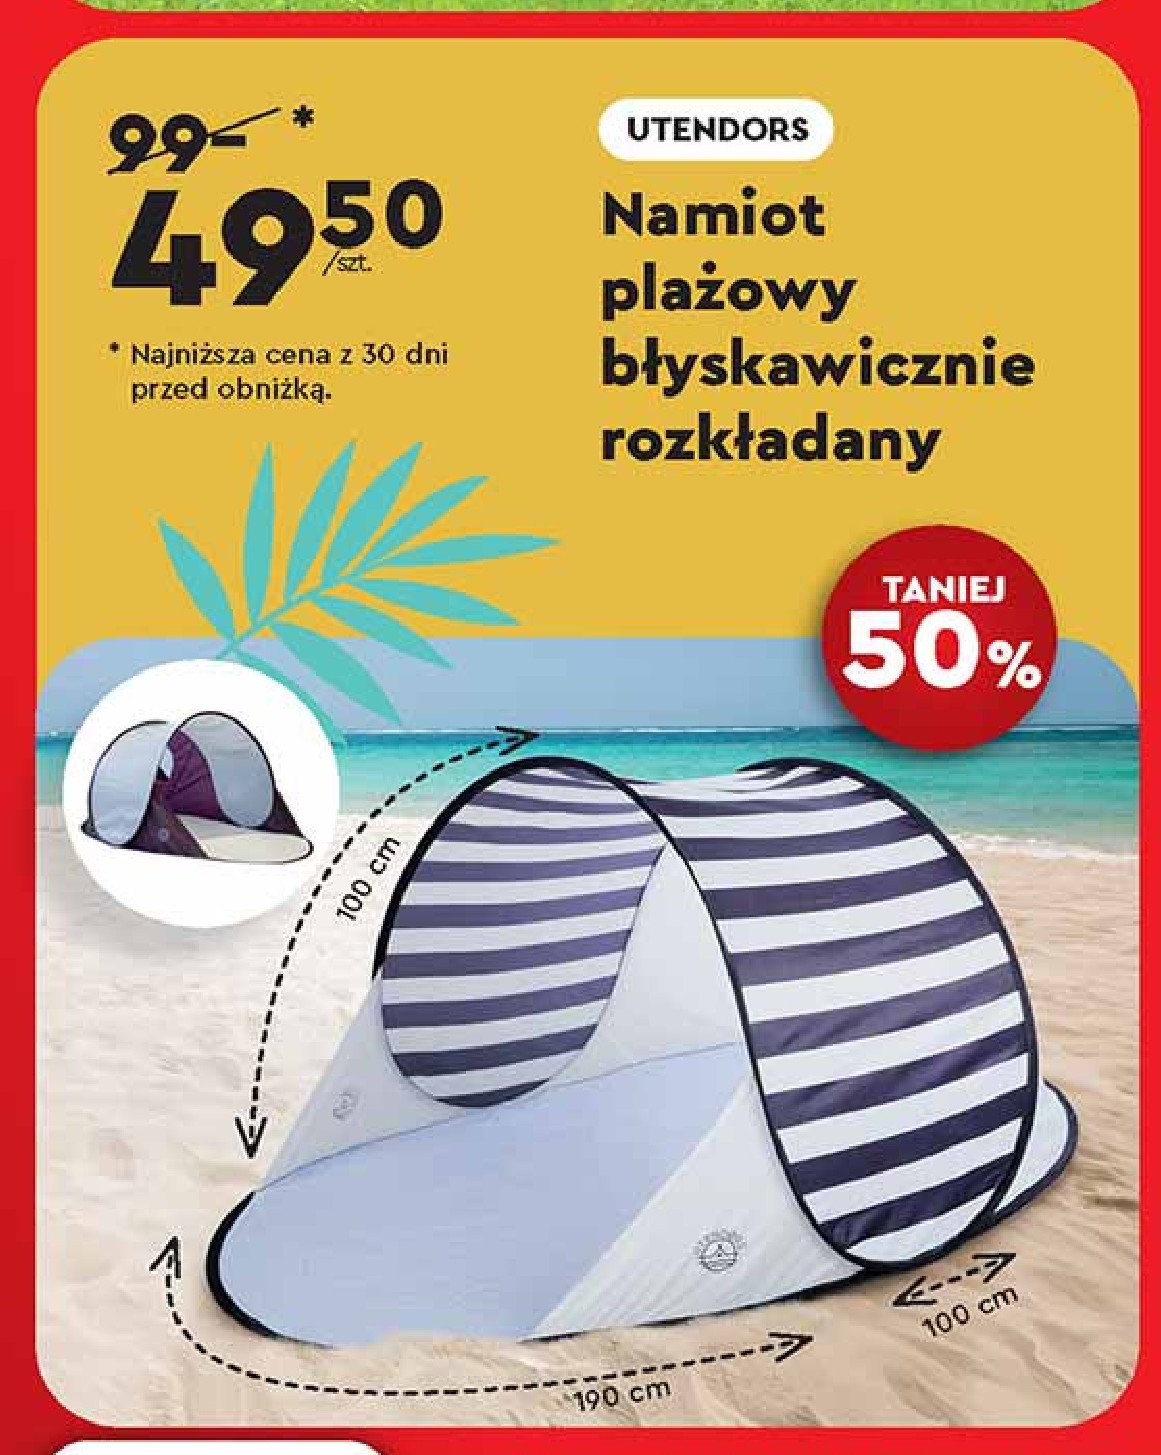 Namiot plażowy 190 x 100 x 100 cm Utendors promocja w Biedronka